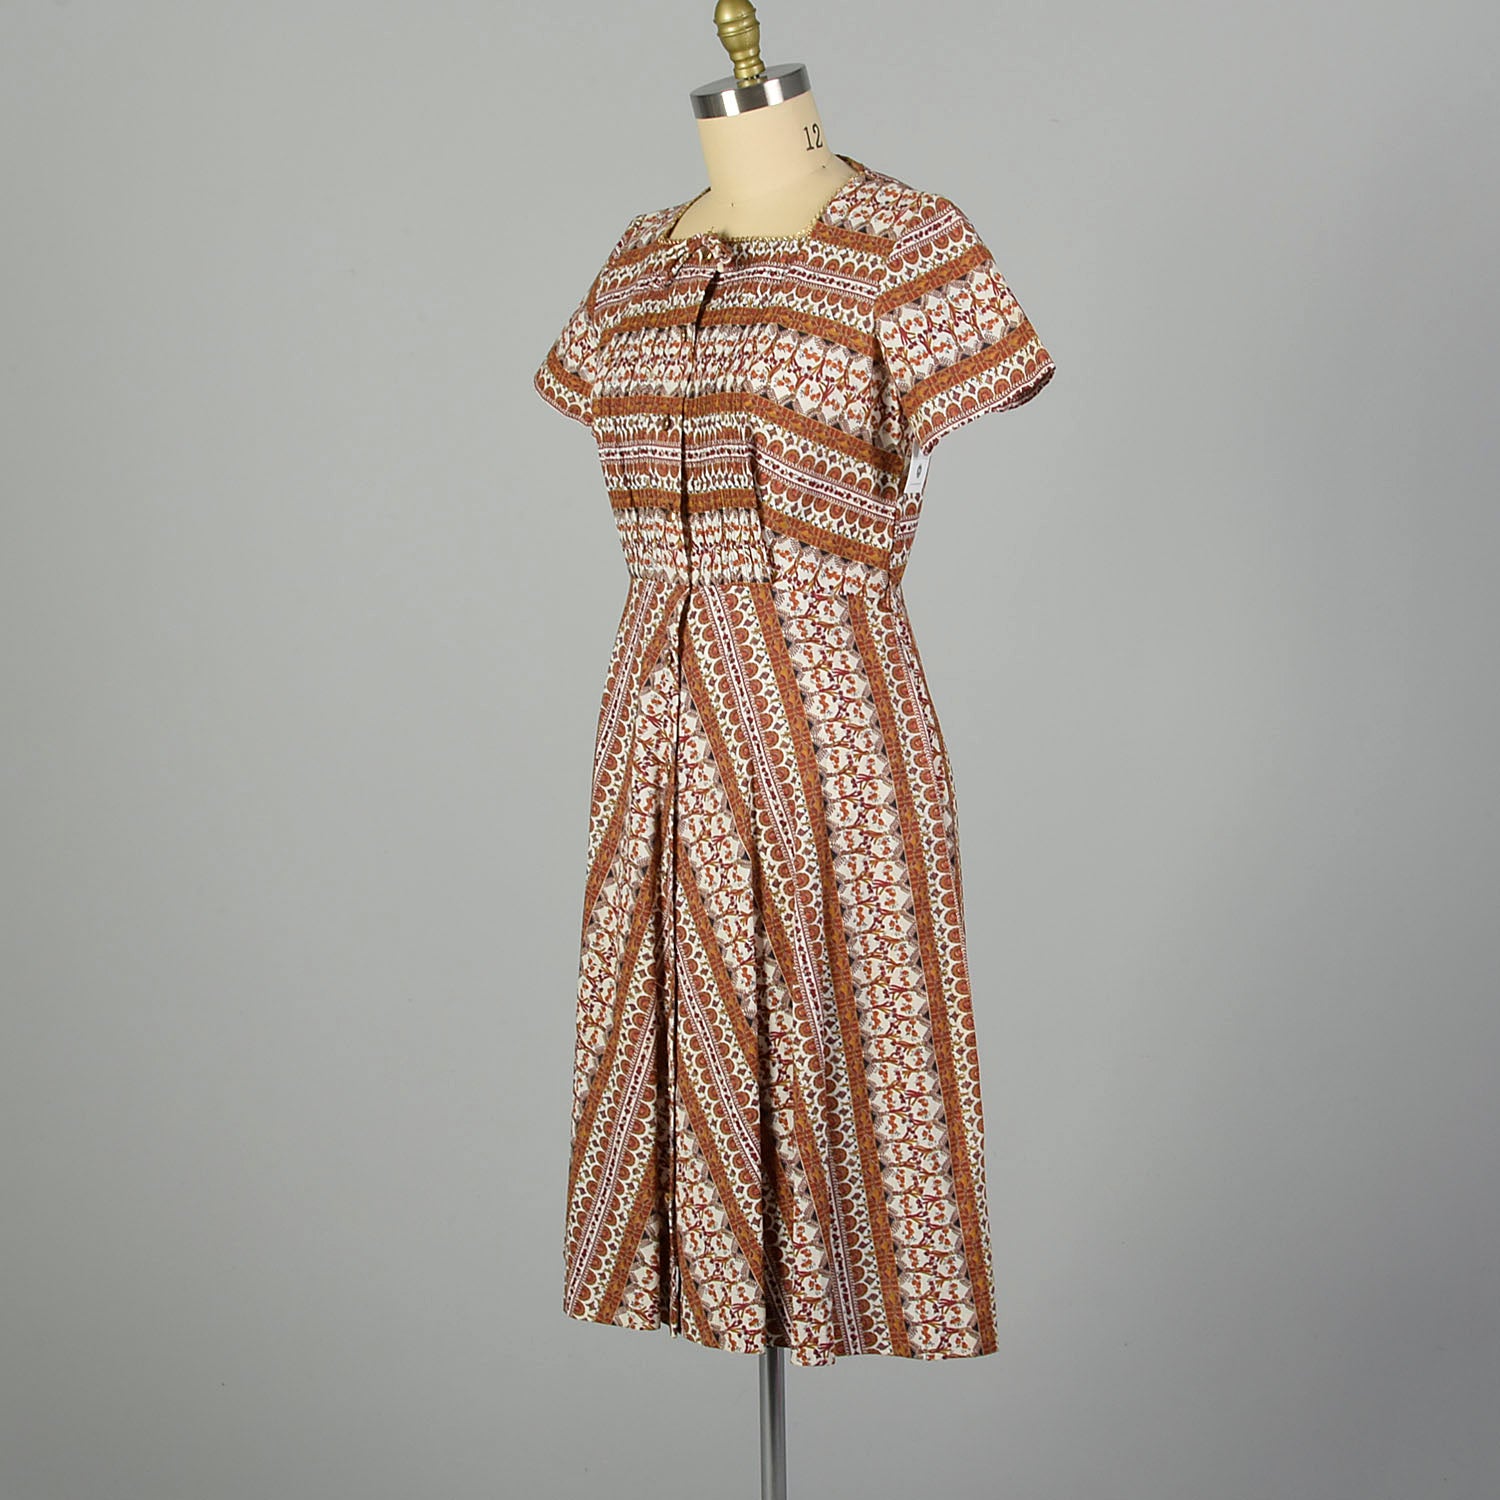 XL 1950s Novelty Print Cotton Day Dress Shirtwaist